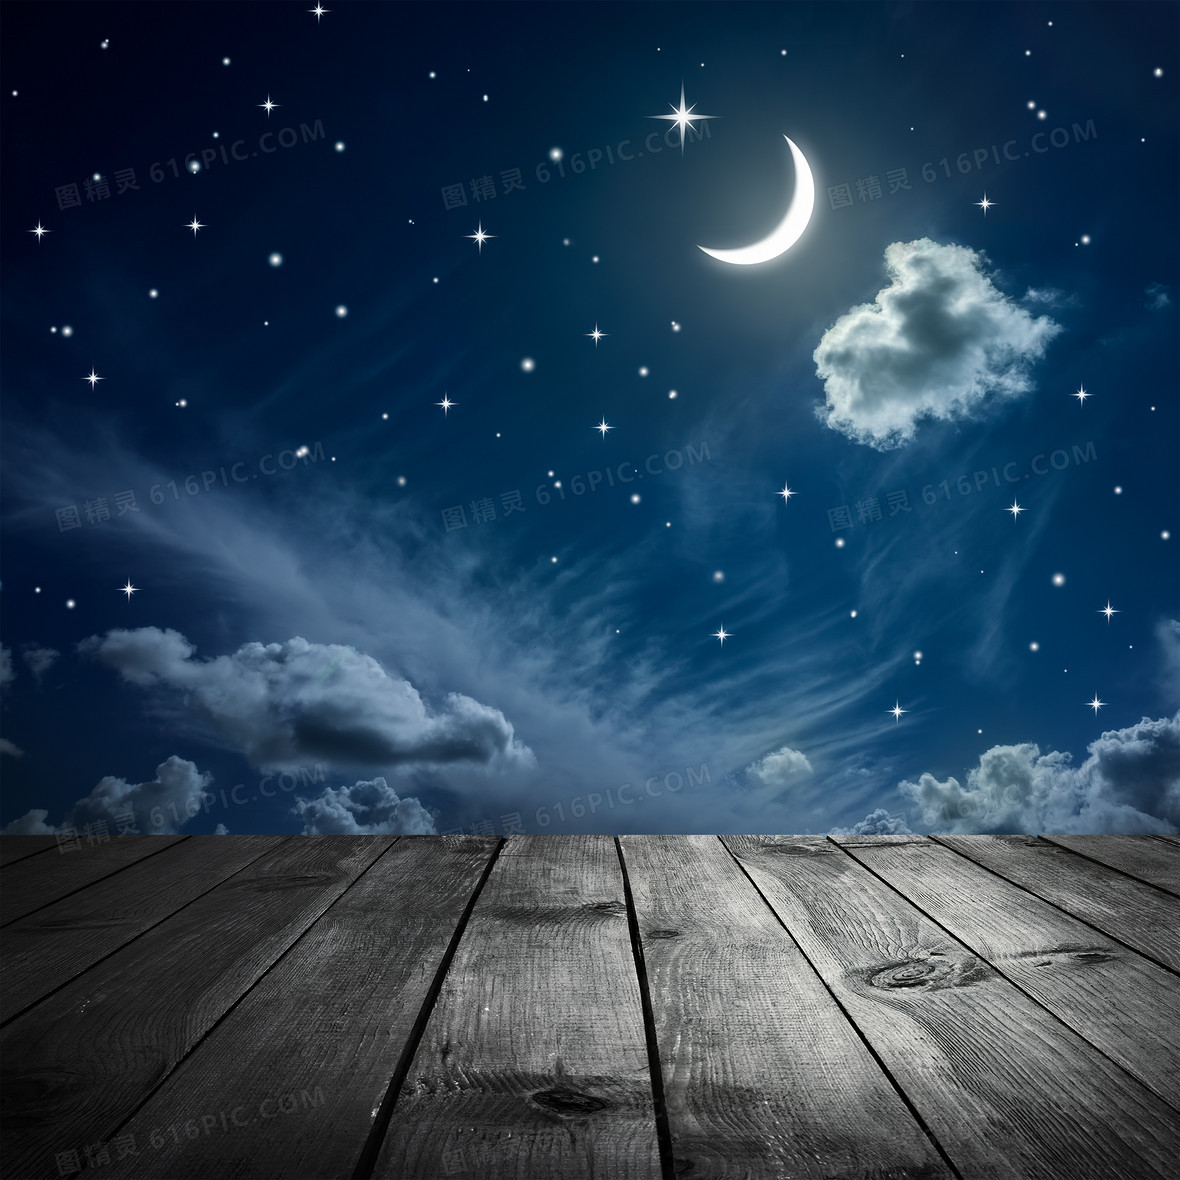 关键词:        木板夜景月亮星星星空木纹云翔游戏背景动漫背景